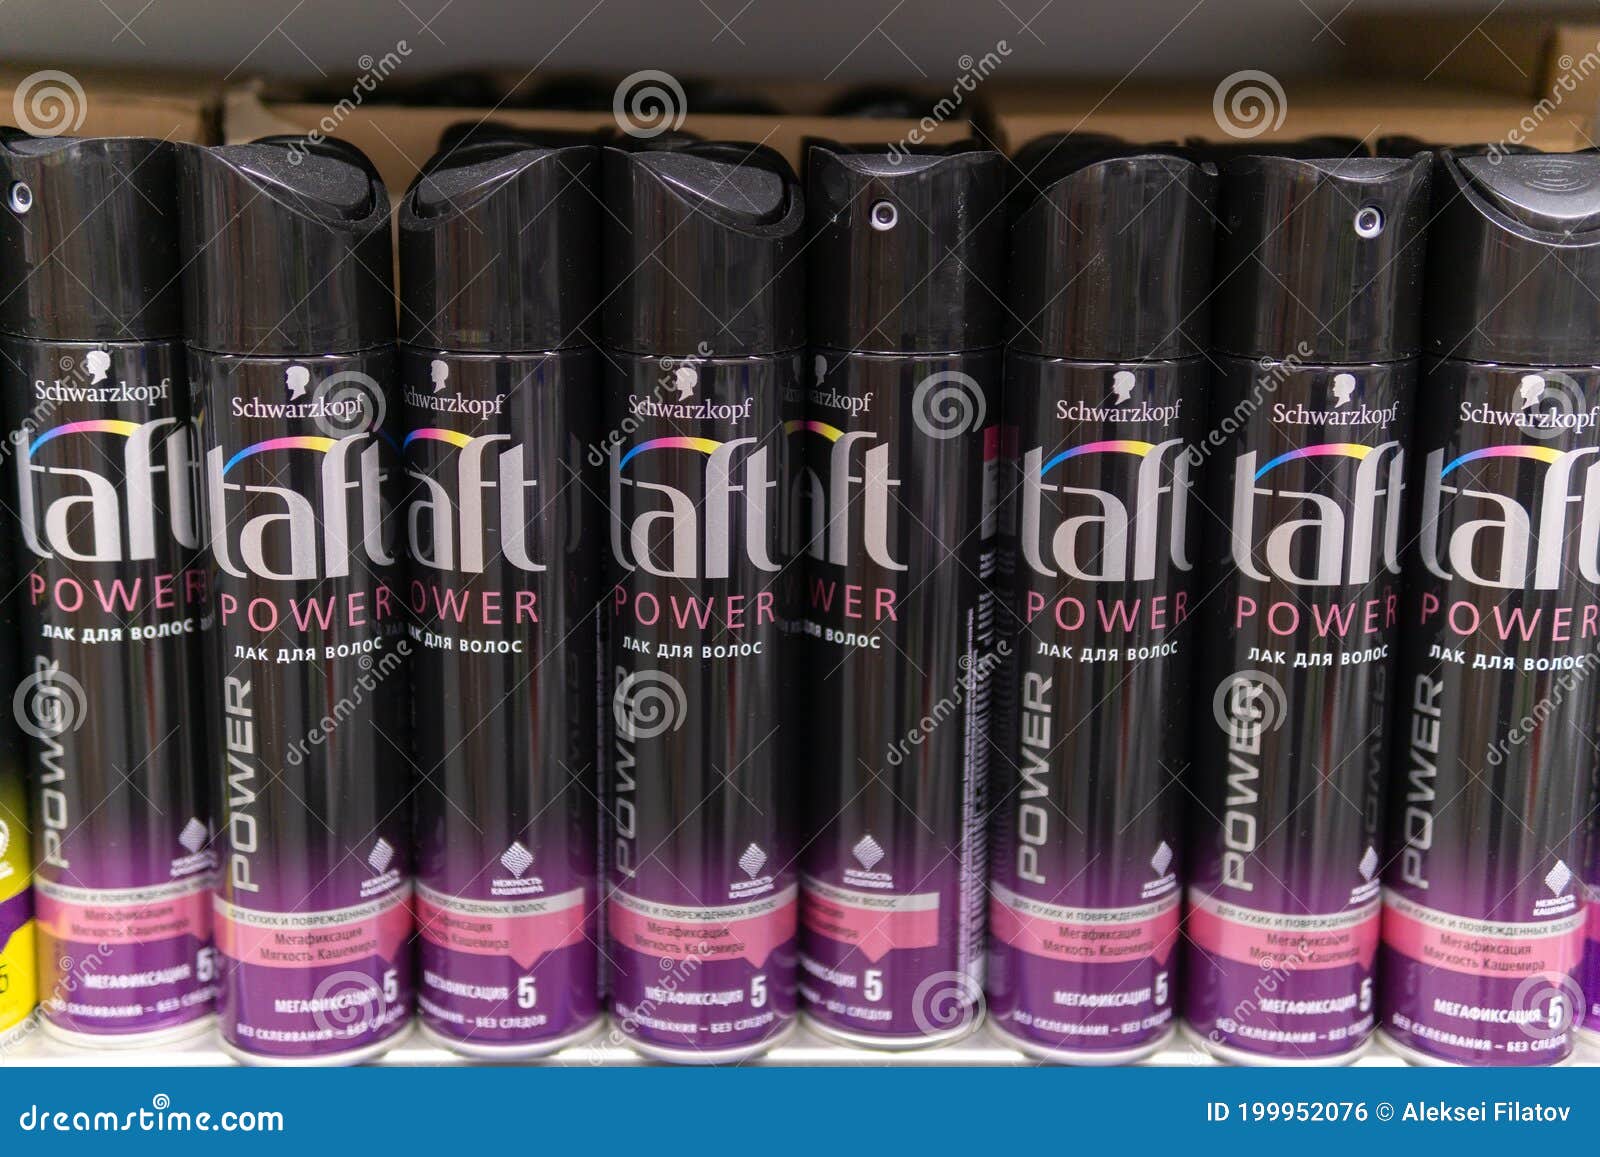 Taft Classic Hairspray Extra Strong 250ml Online at Best Price  Hair Spray   Lulu UAE price in UAE  LuLu UAE  supermarket kanbkam